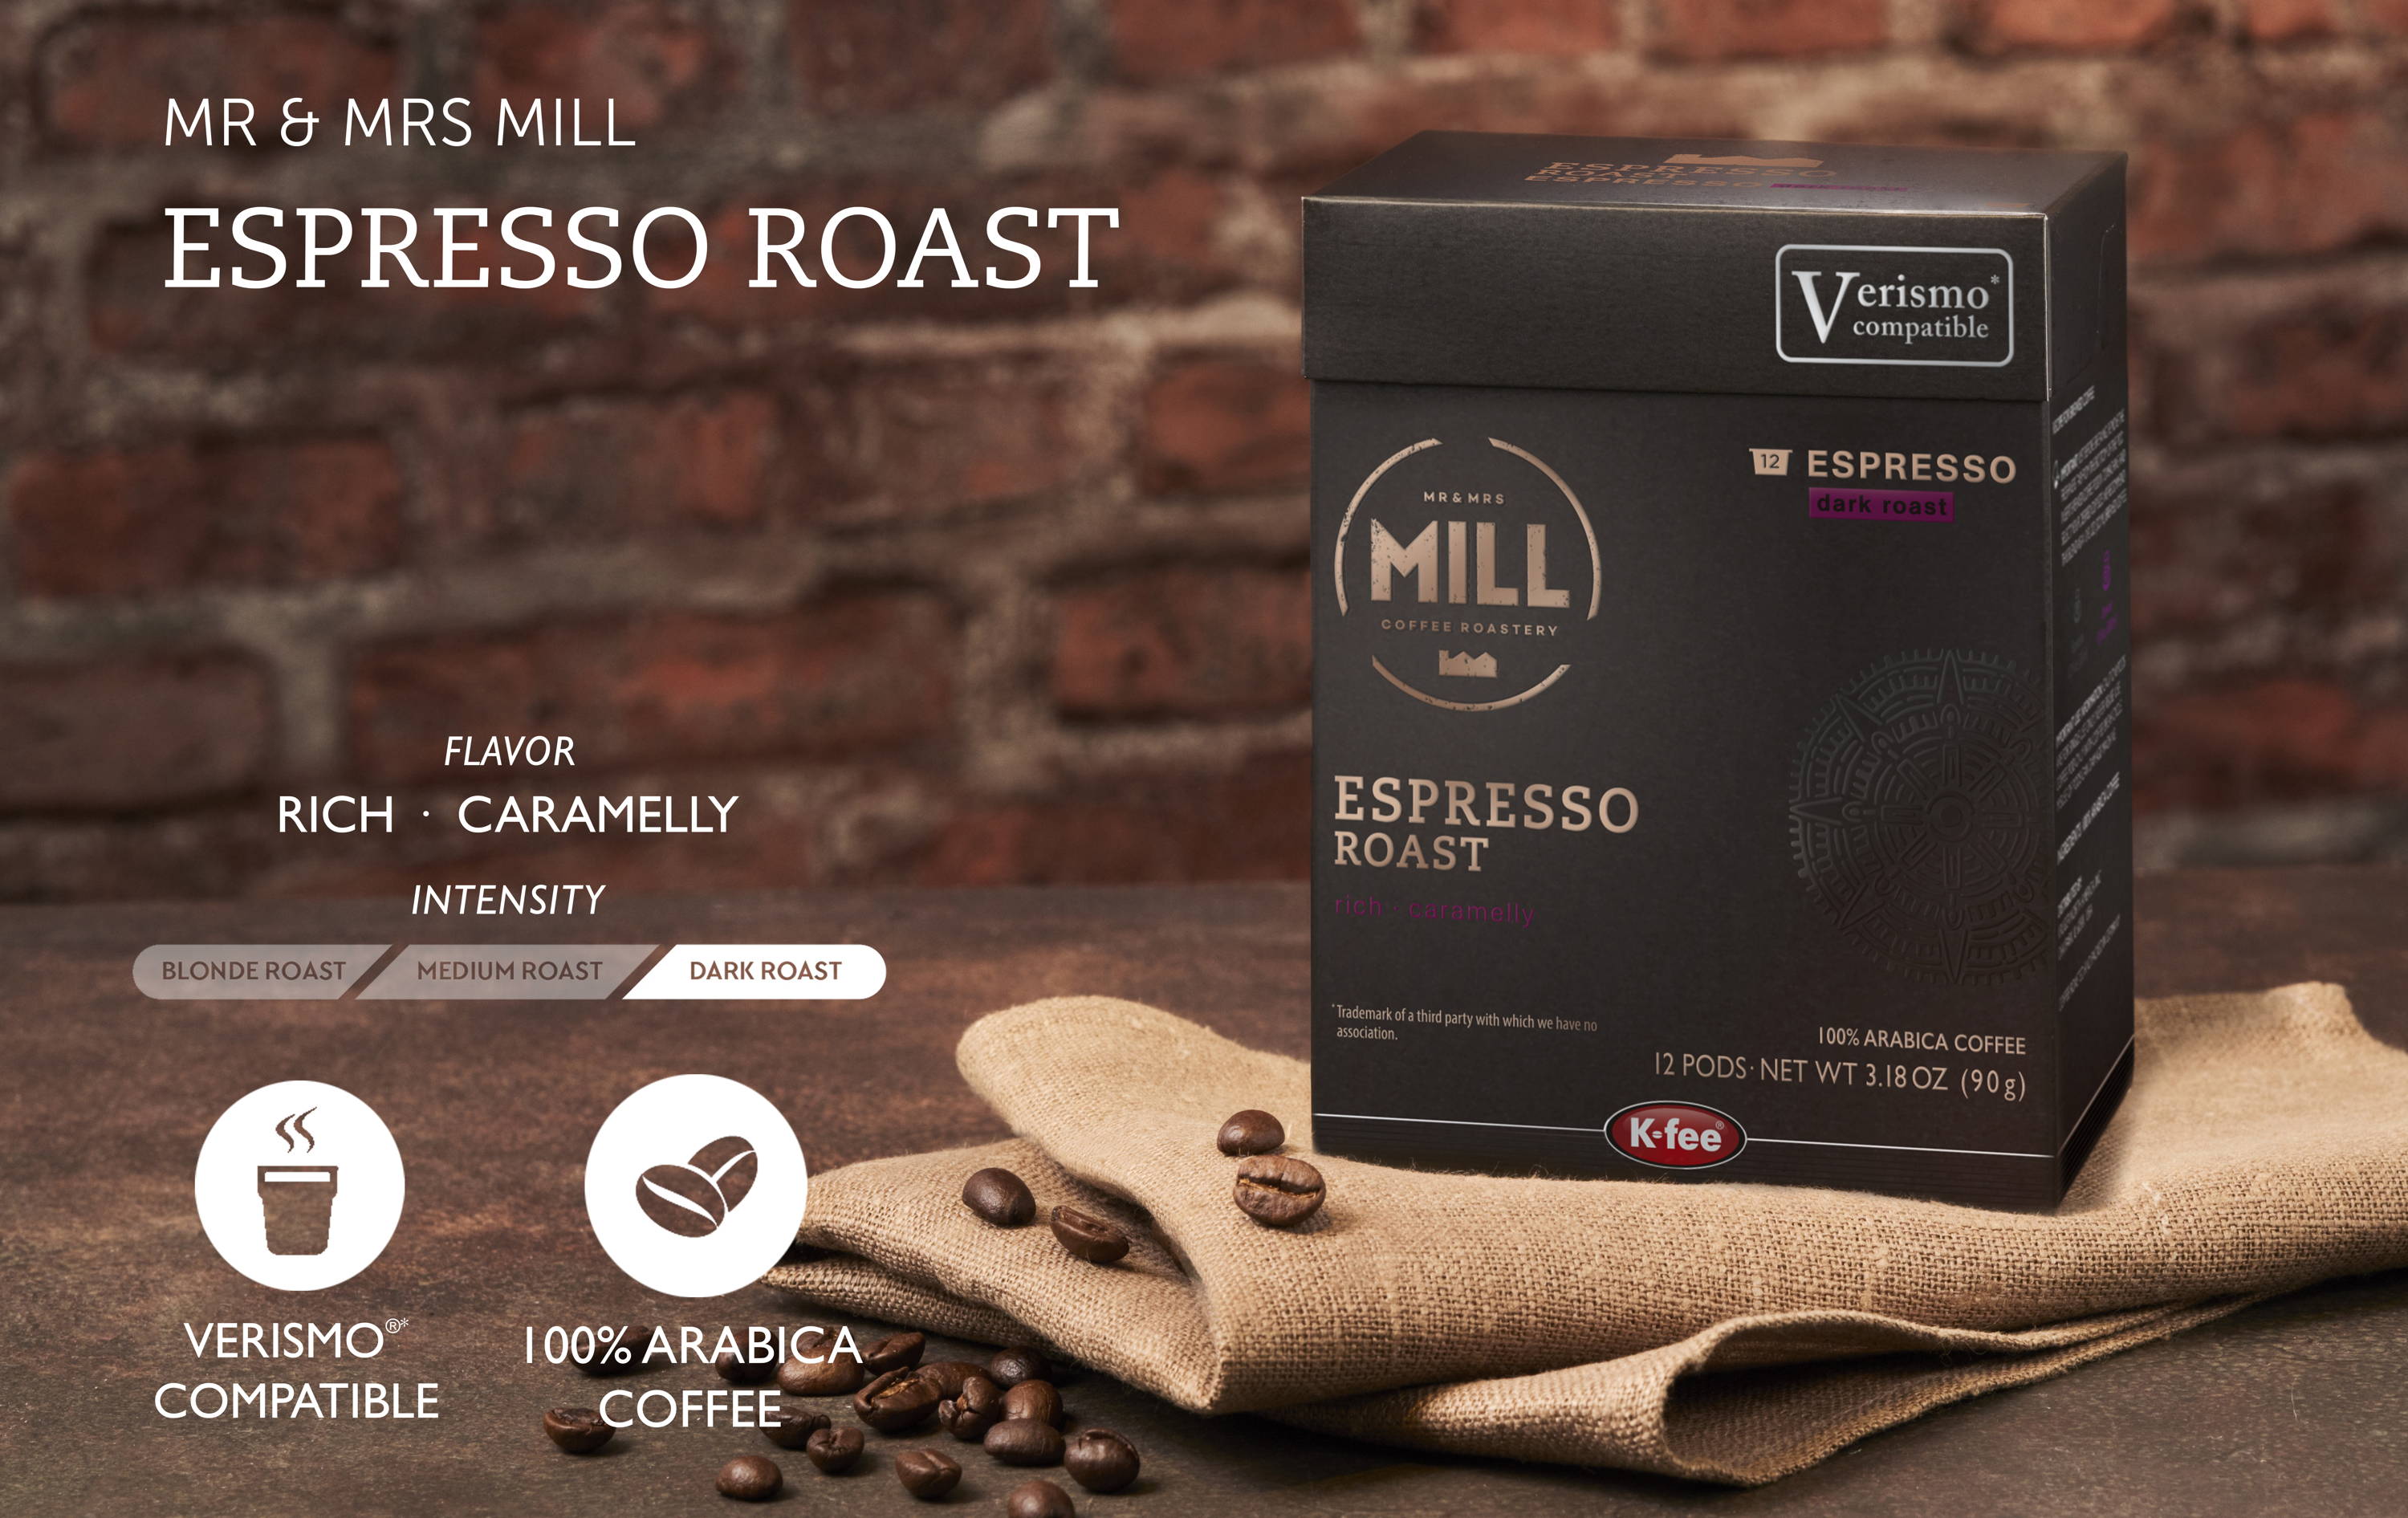 K-fee® & Verismo* compatible coffee, espresso & multi-beverage